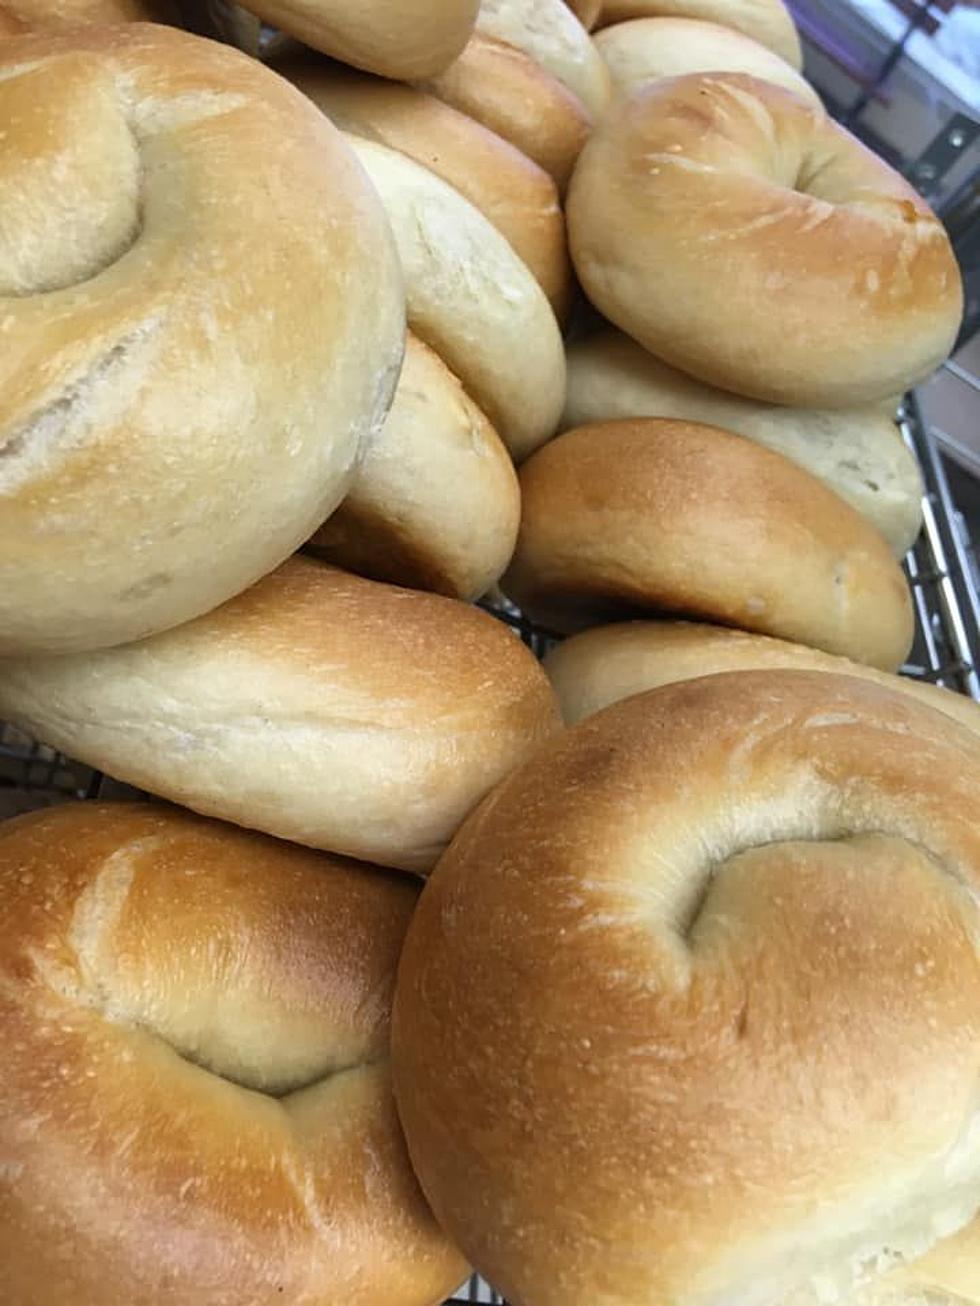 Yamazaki Baking buys bagel maker Bakewise Brands